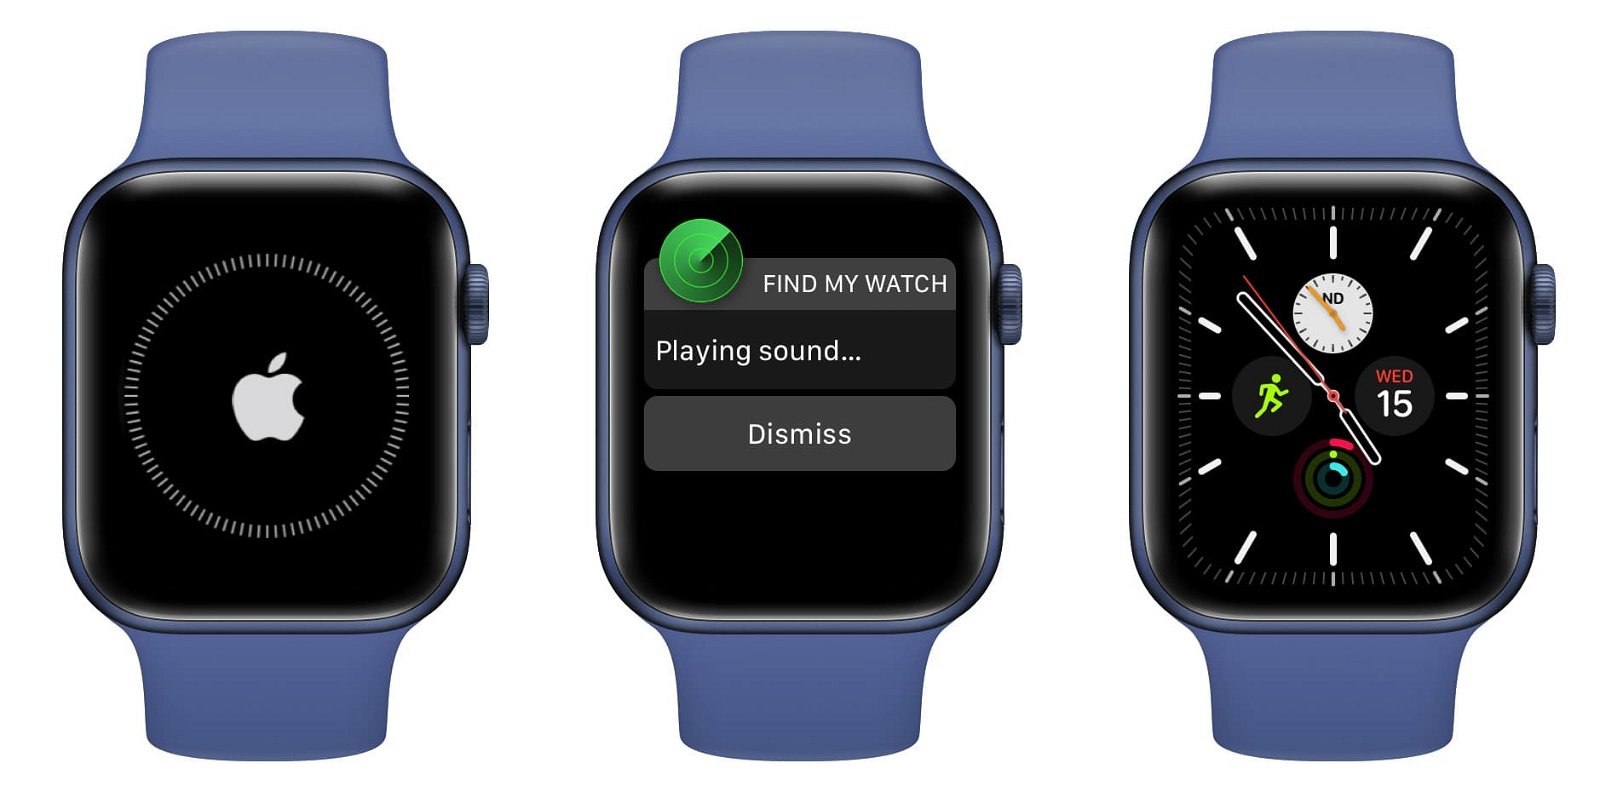 Apple Watch sonido Encontrar